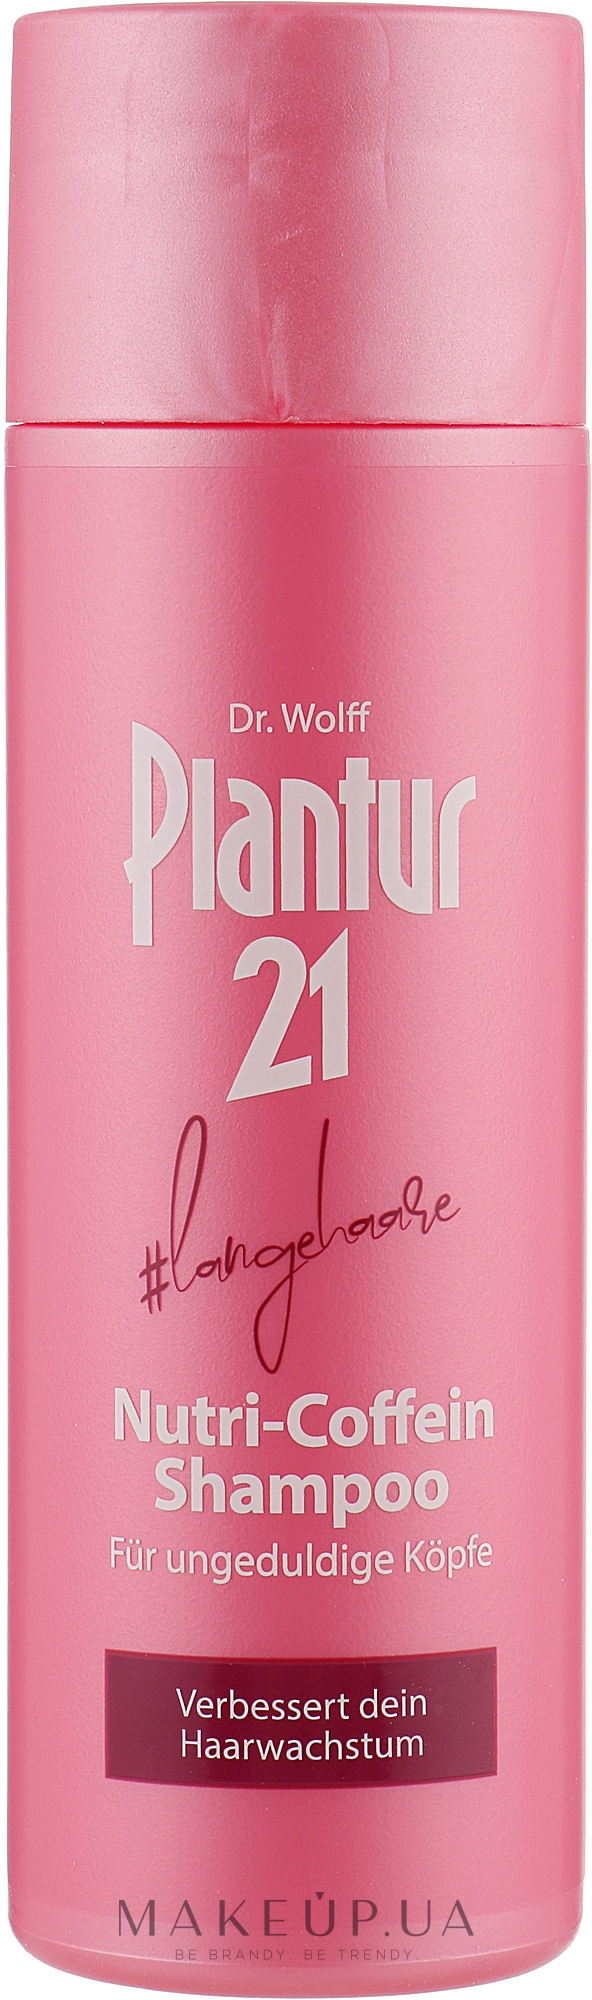 Нутри-кофеиновый шампунь для длинных волос - Plantur 21 #longhair Nutri-Caffeine-Shampoo — фото 200ml